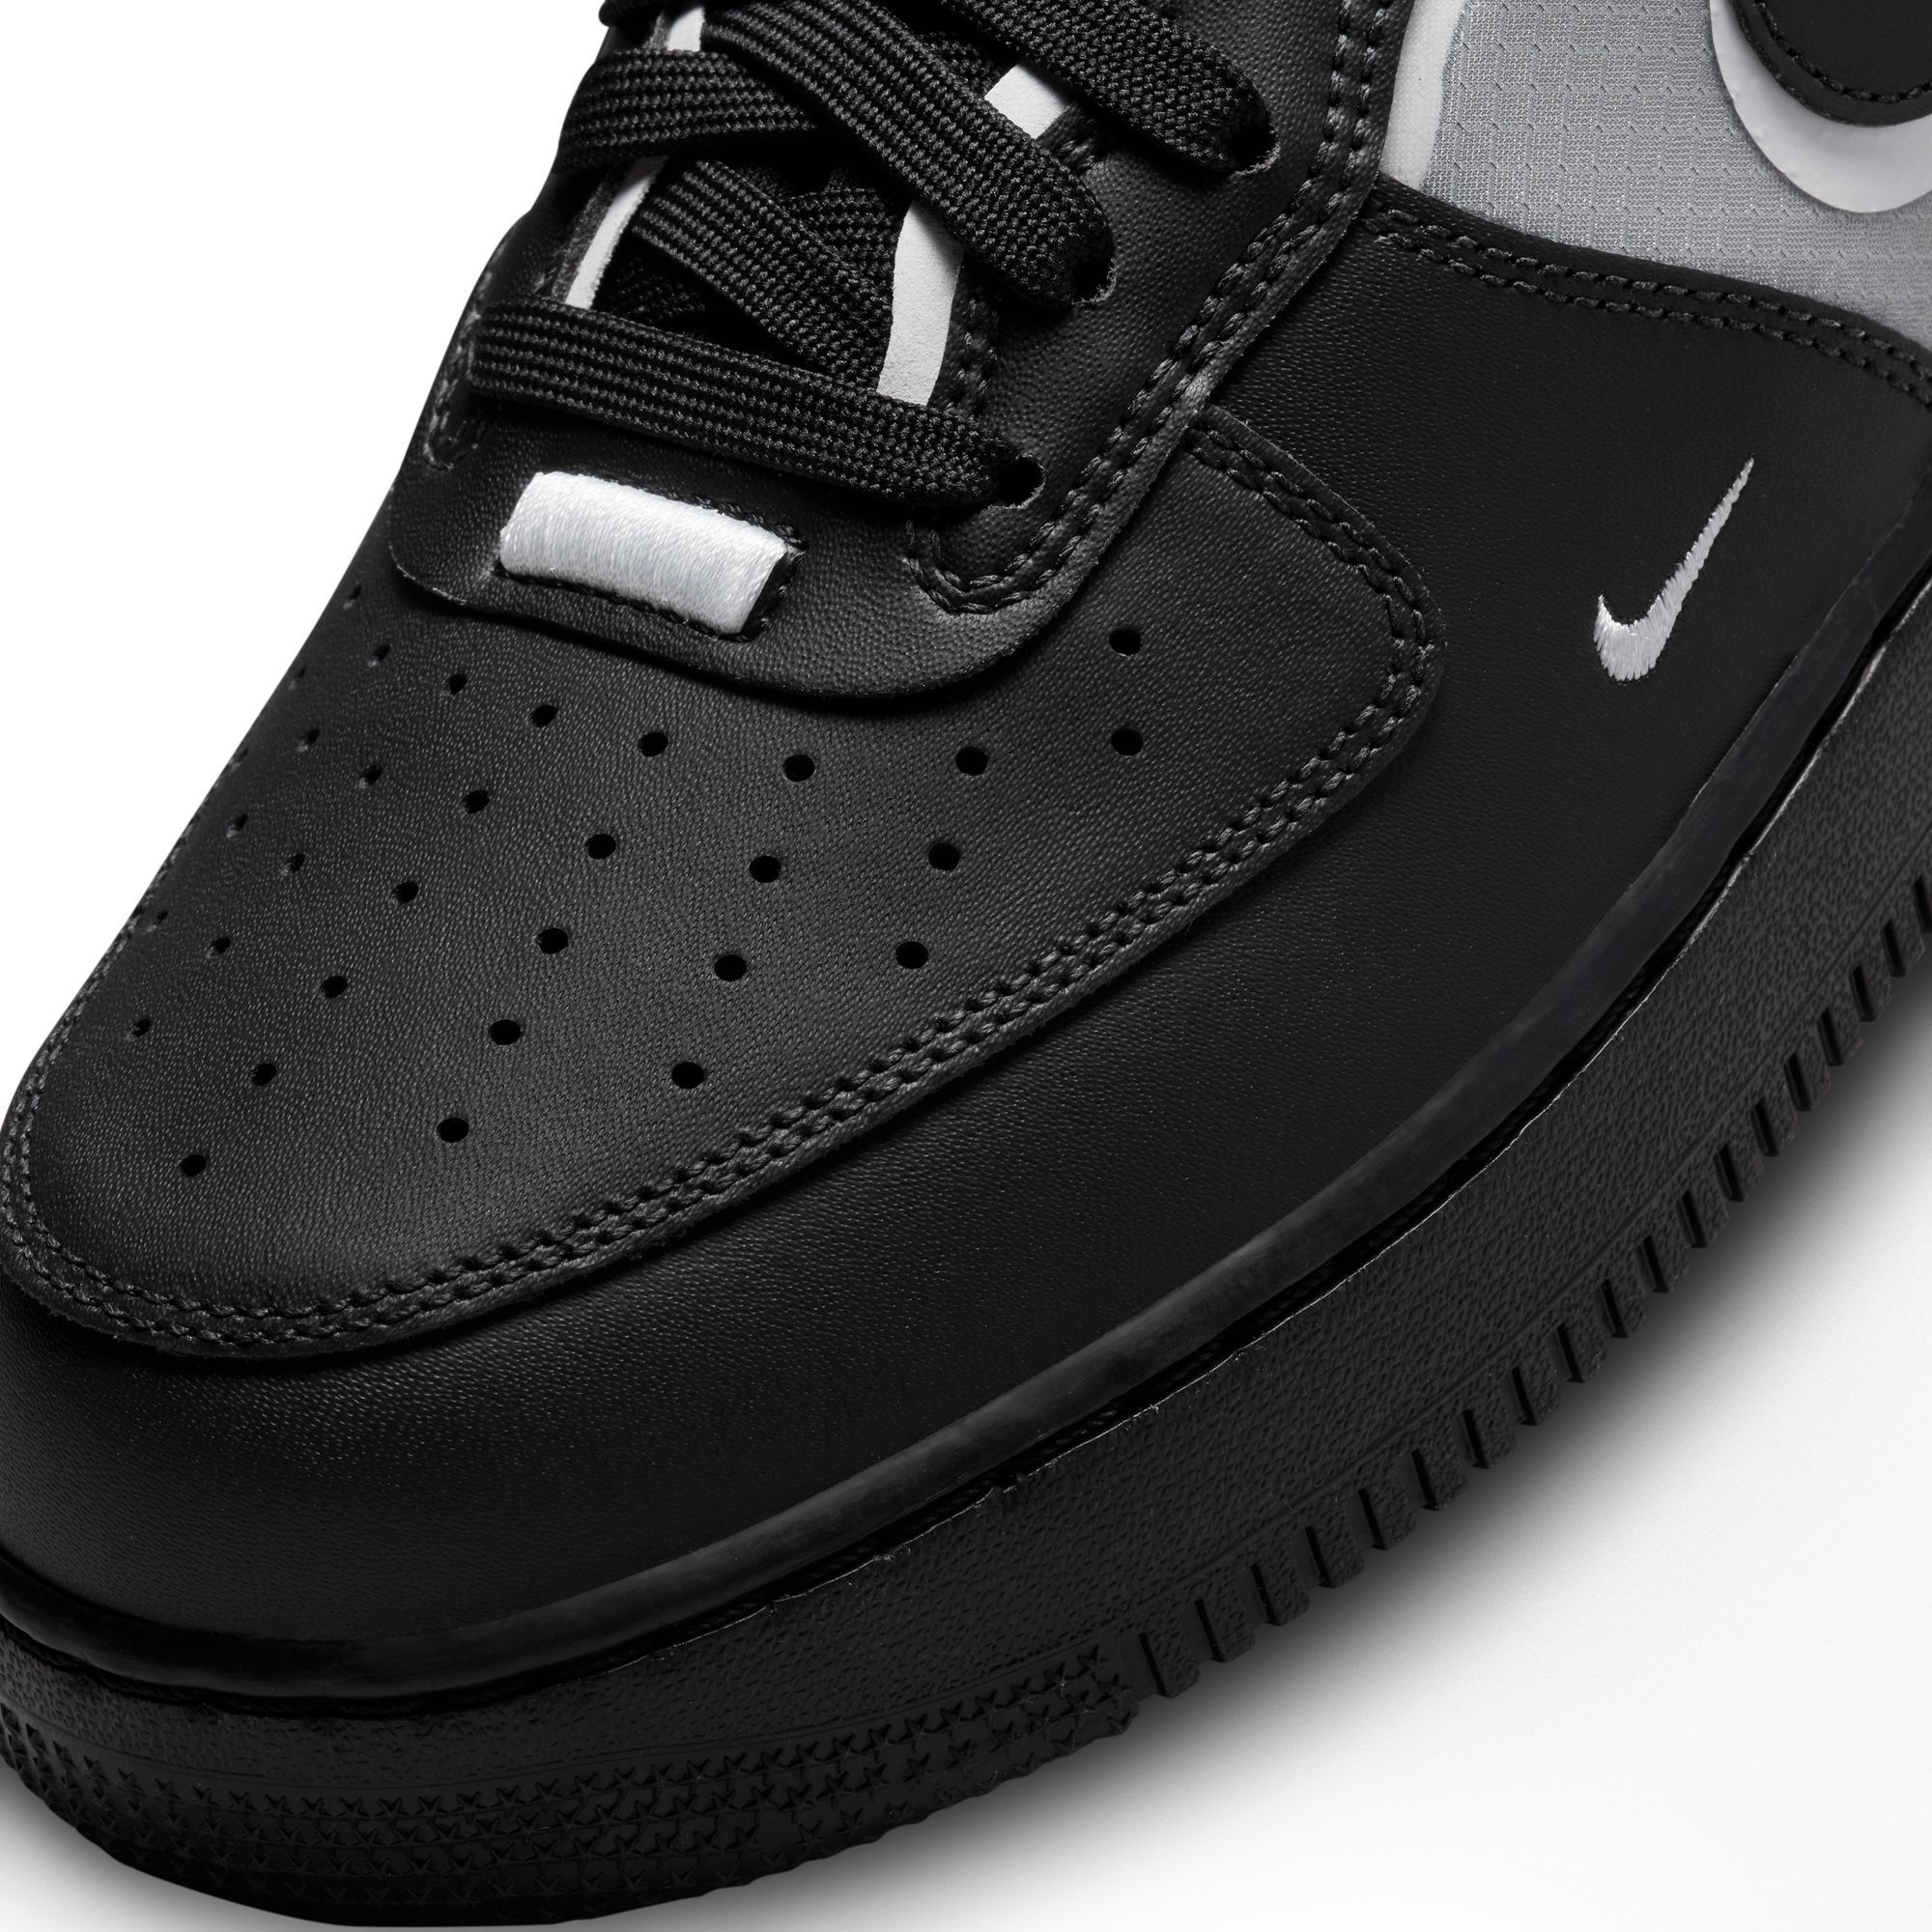  Nike Air Force 1 Mid React Men's Shoes, Off Noir/Off  Noir-Action Grape, 8.5 M US